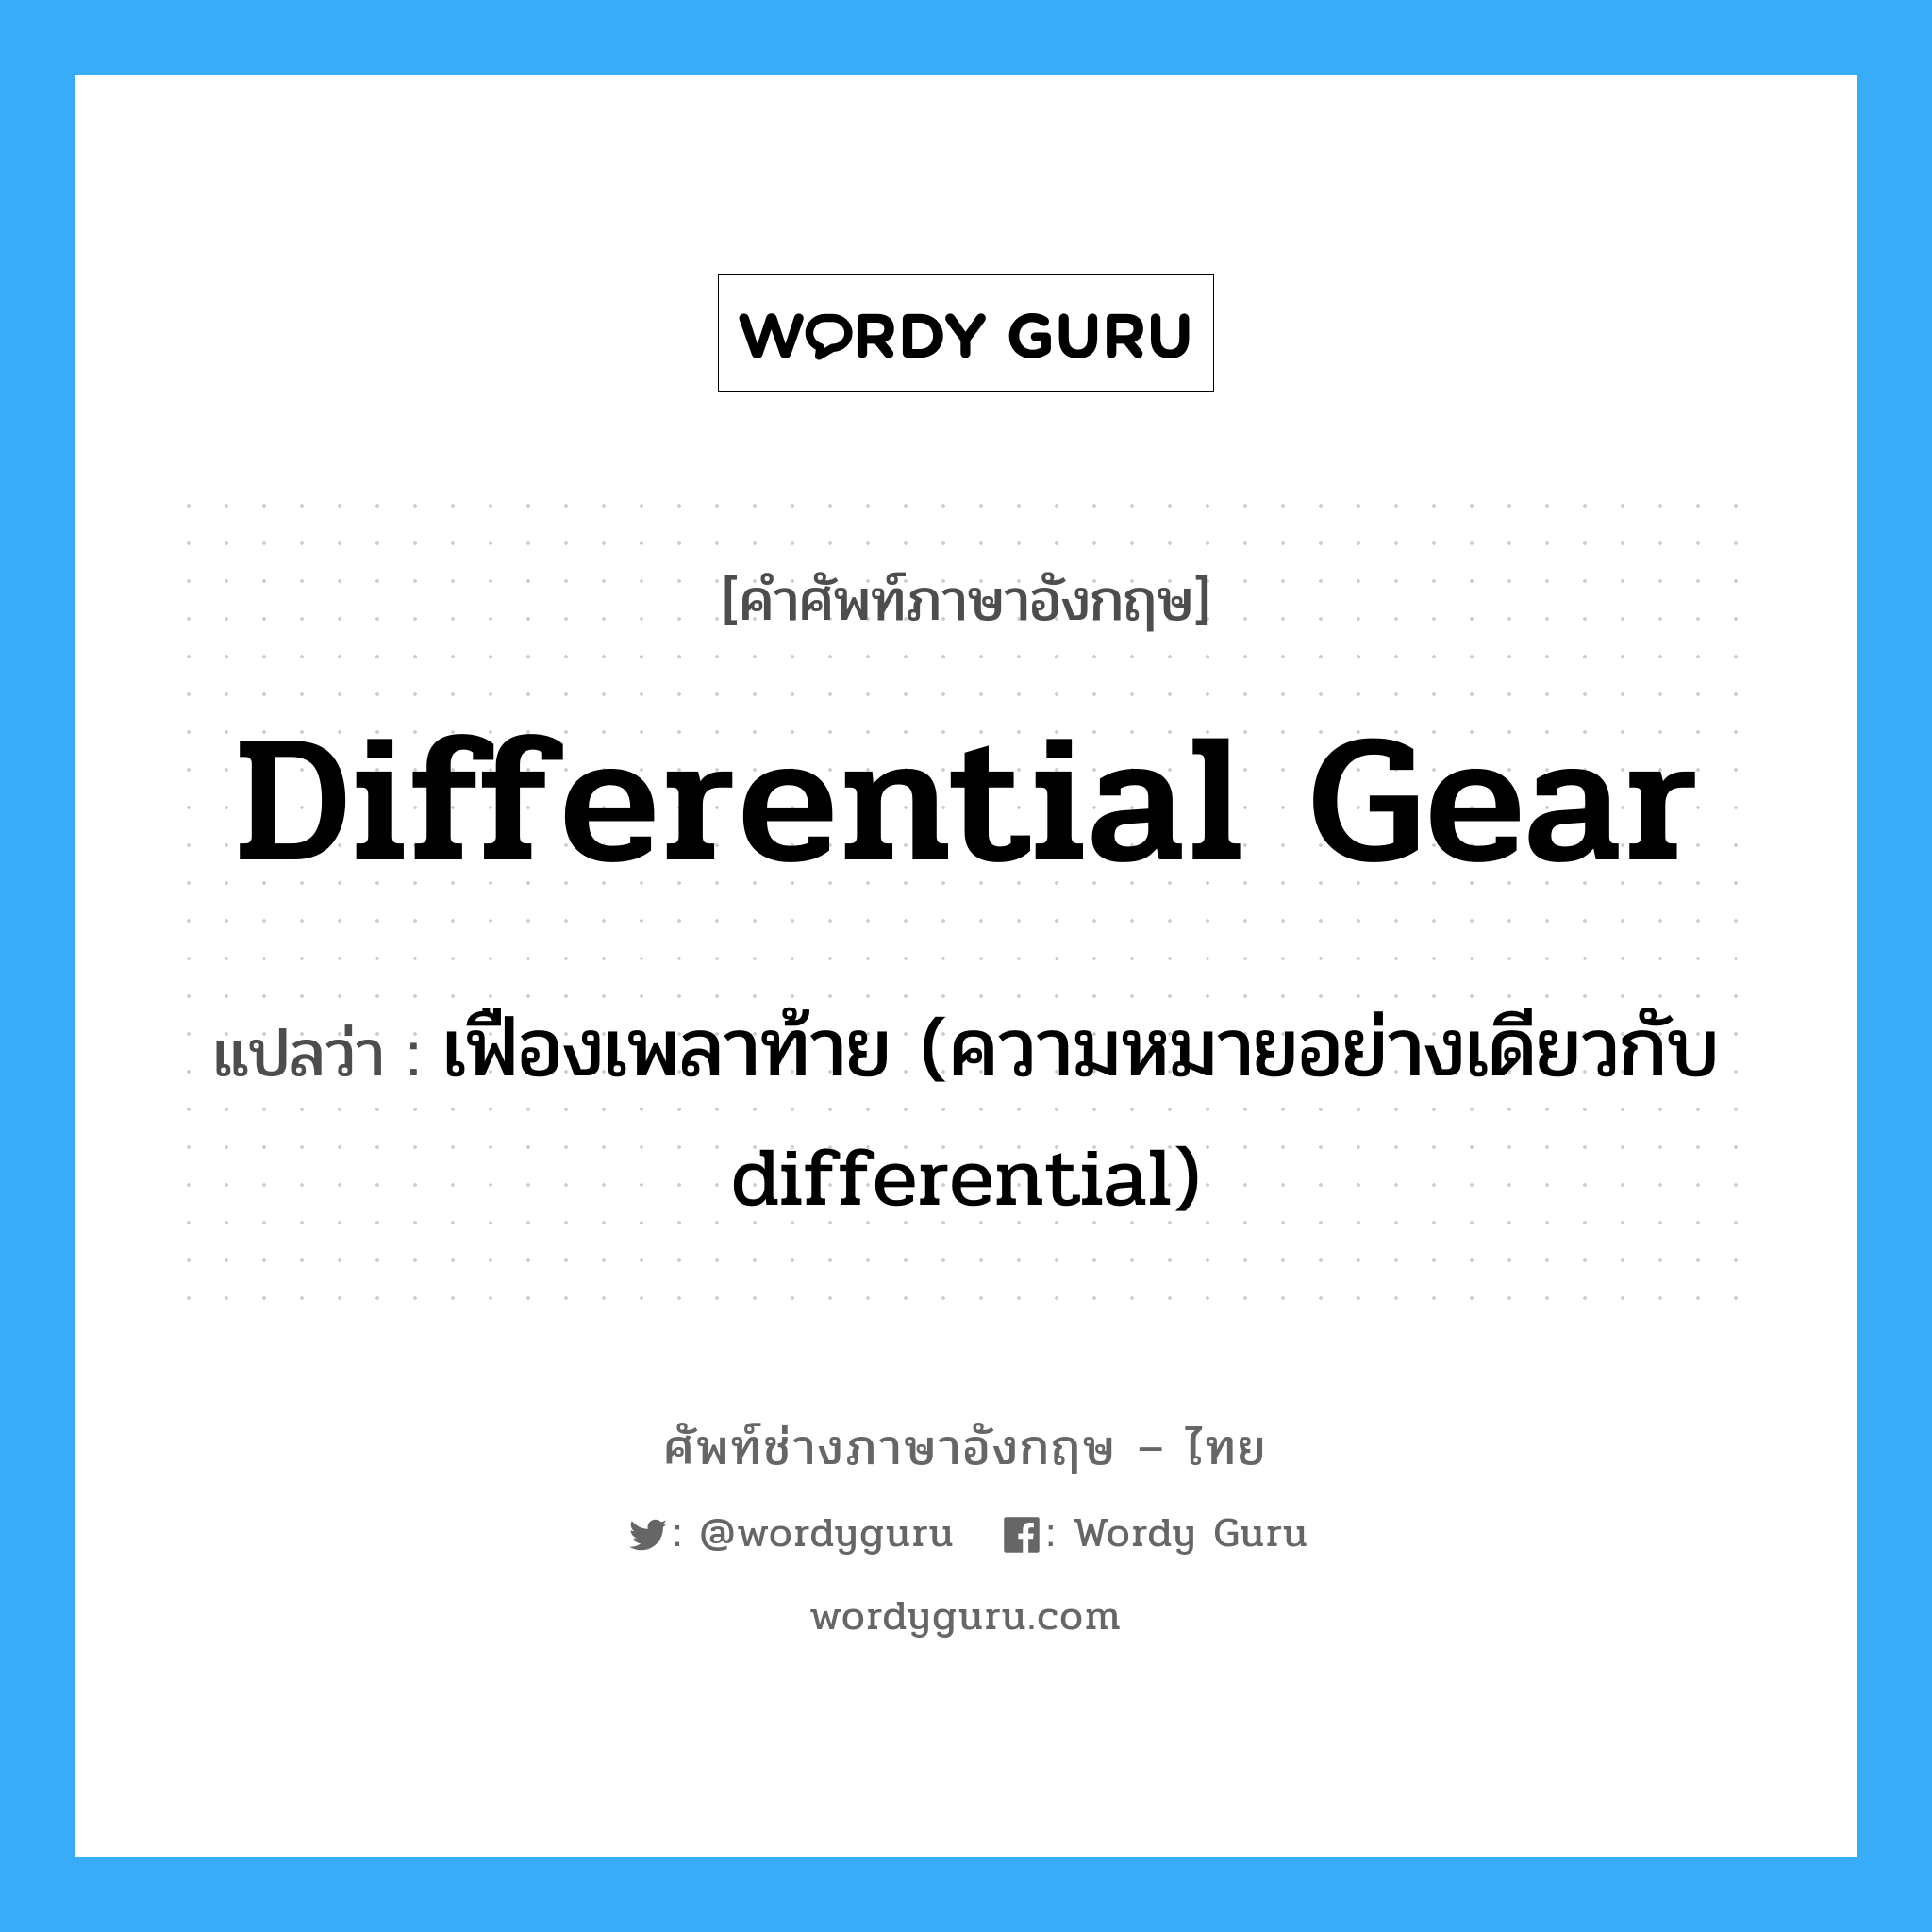 differential gear แปลว่า?, คำศัพท์ช่างภาษาอังกฤษ - ไทย differential gear คำศัพท์ภาษาอังกฤษ differential gear แปลว่า เฟืองเพลาท้าย (ความหมายอย่างเดียวกับ differential)